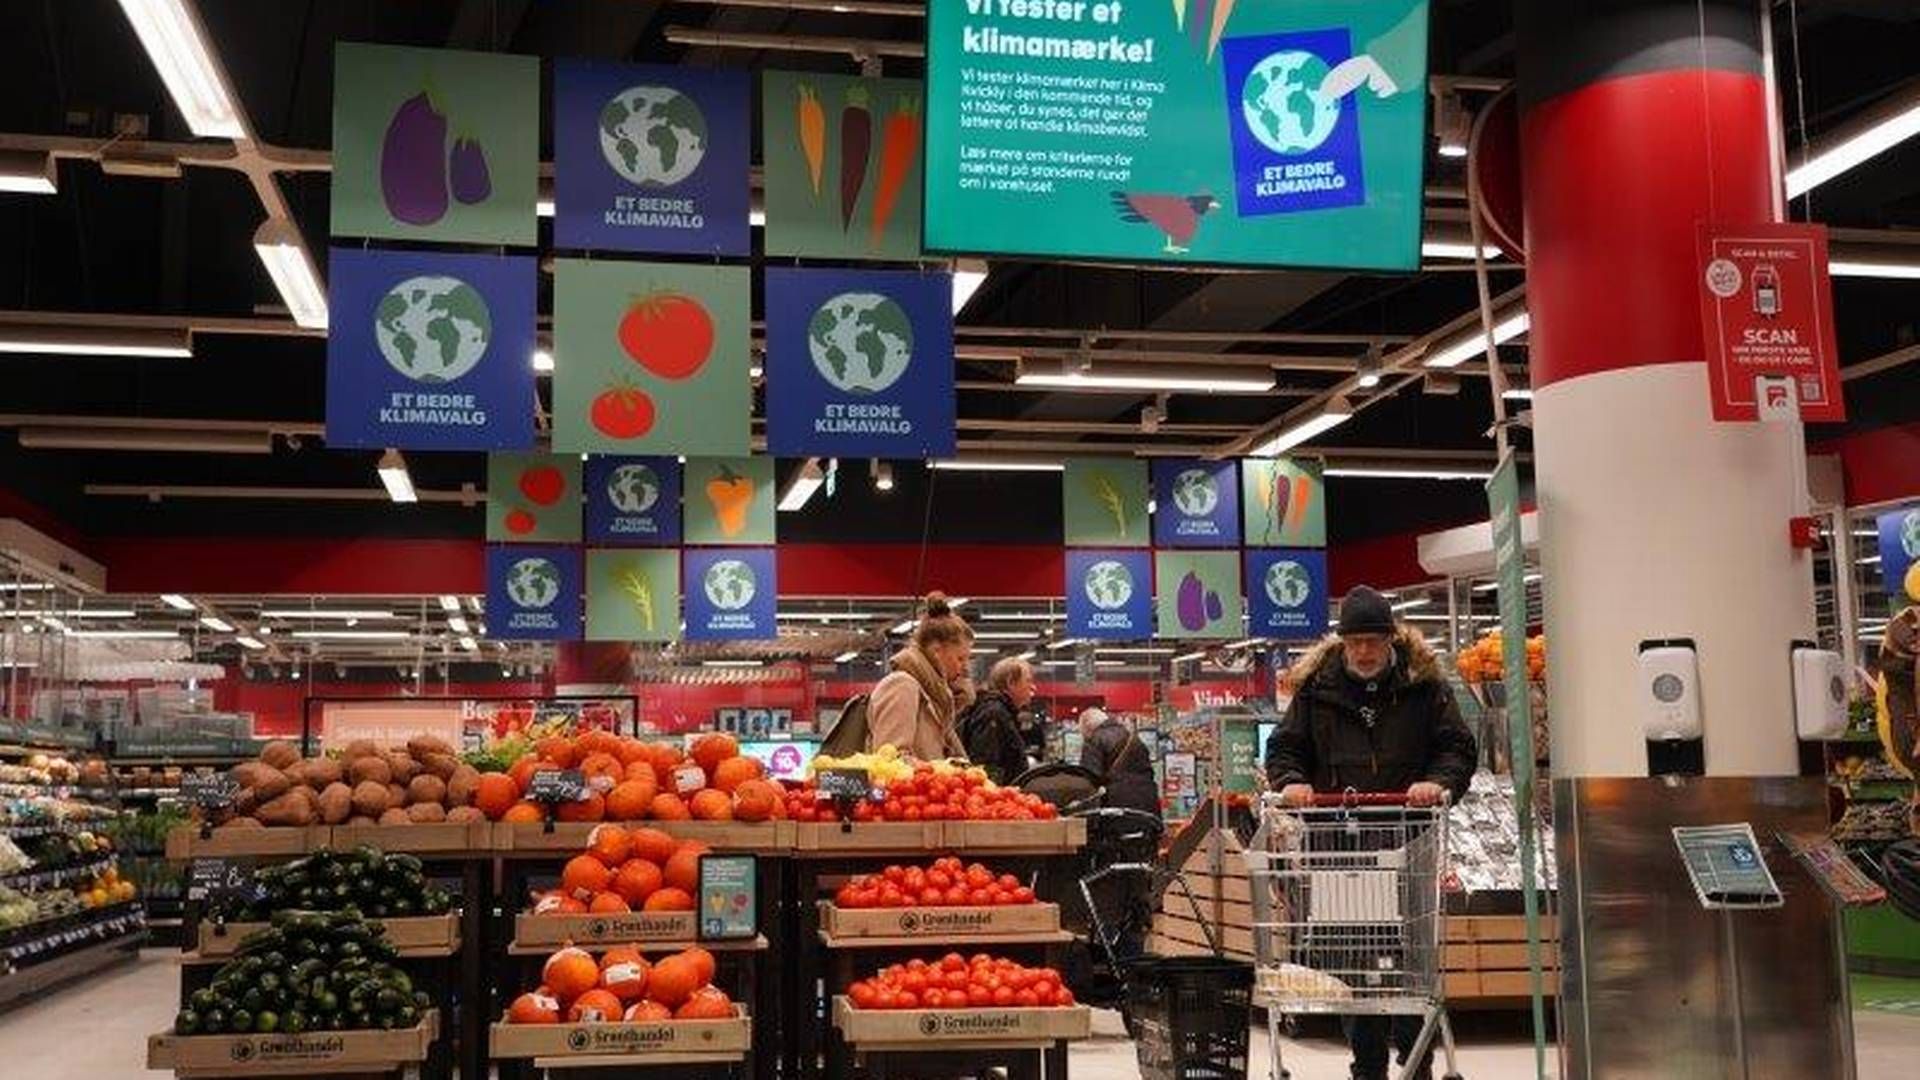 Julesalget lettede ikke presset på dagligvarebutikkerne, viser tal fra Danmarks Statistik. | Foto: Coop